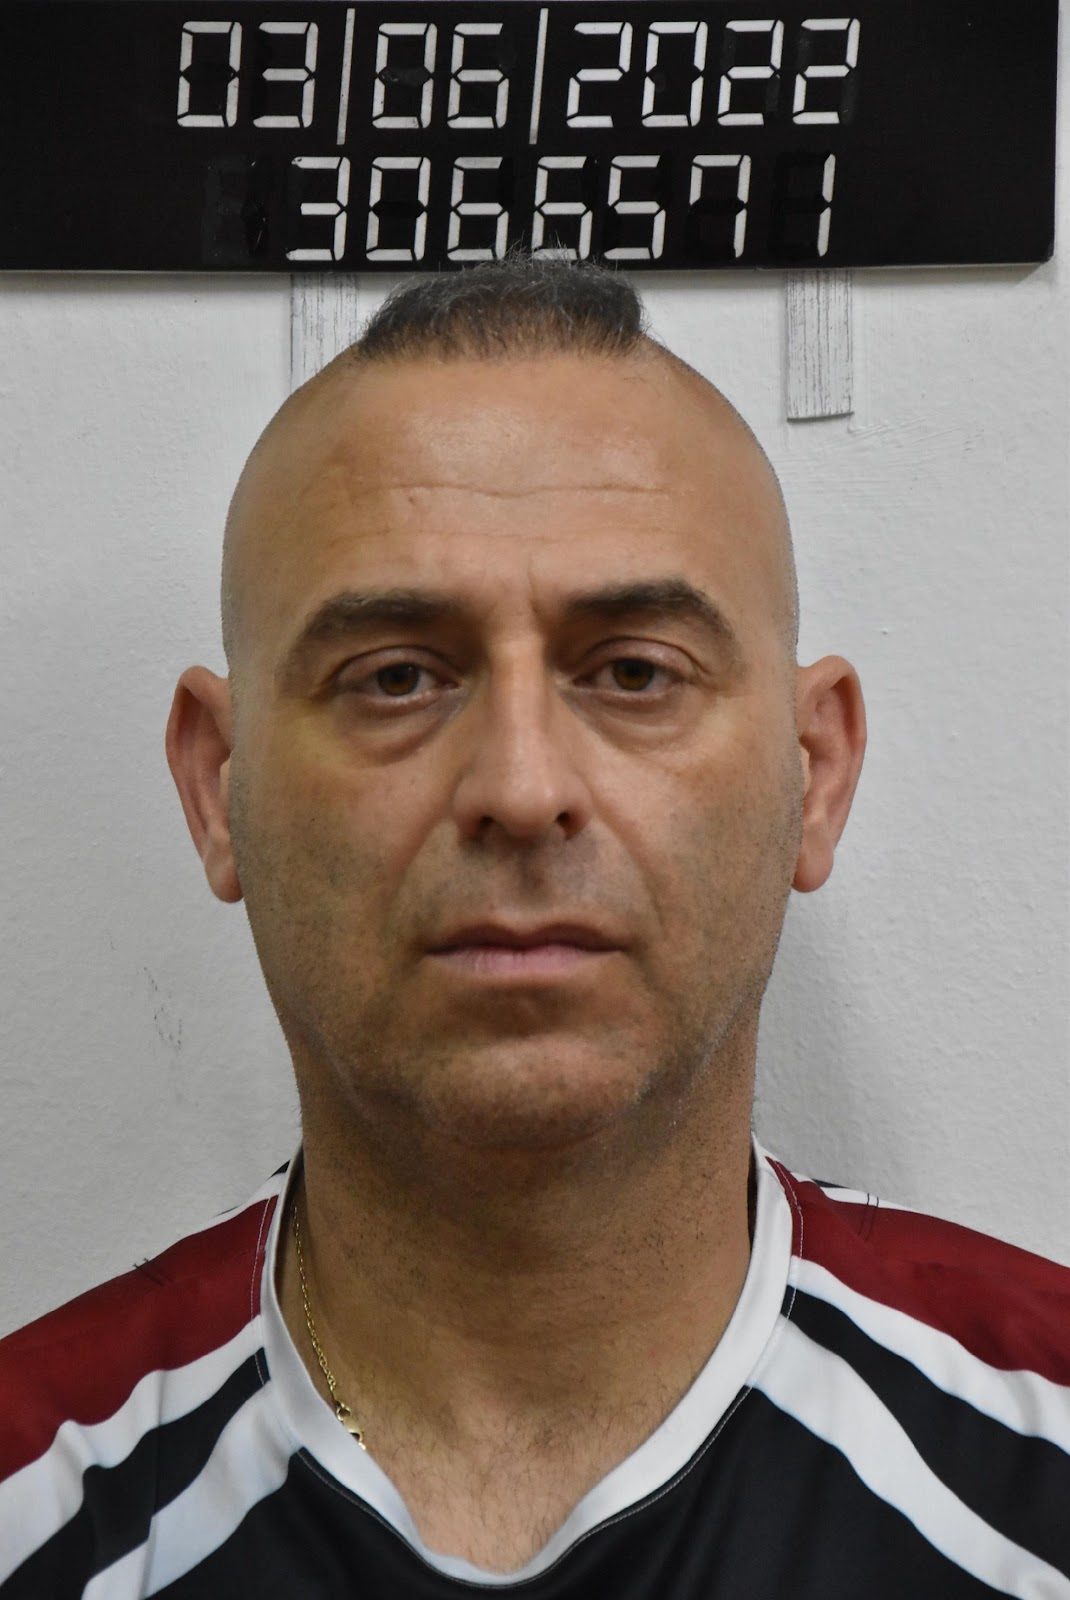 Κρήτη: Αυτός είναι ο προπονητής πολεμικών τεχνών που κατηγορείται για ασέλγεια